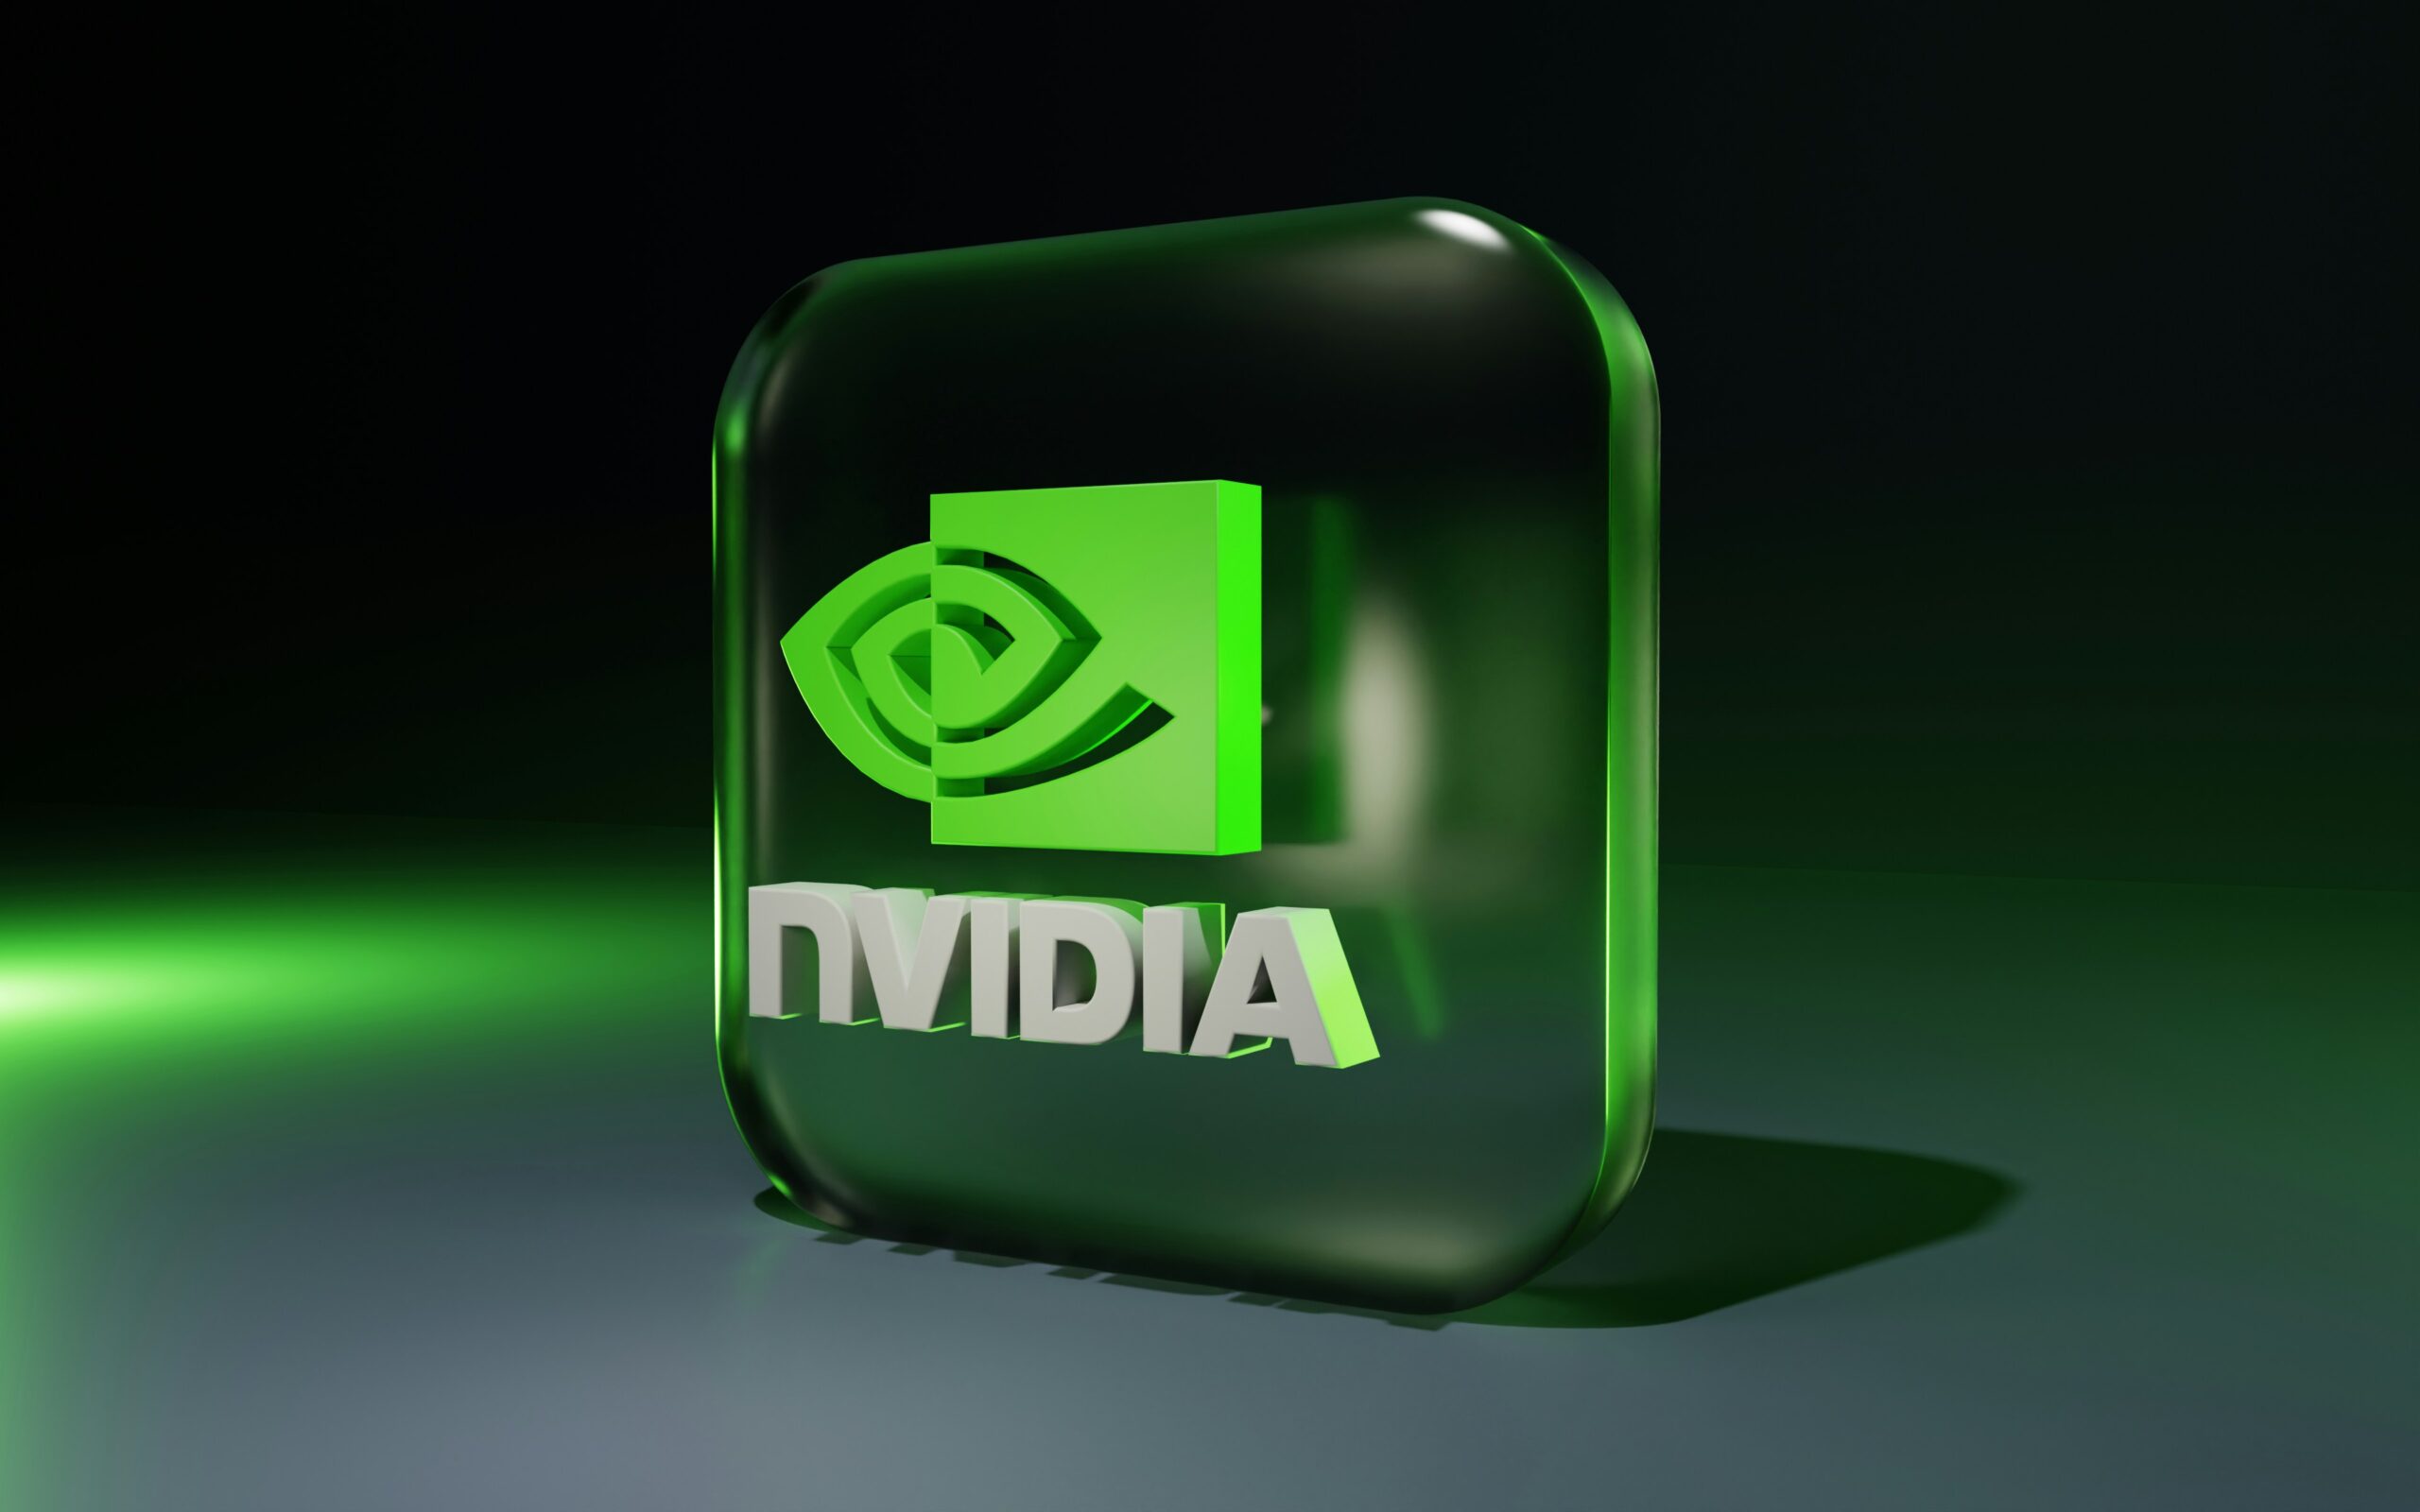 Yotta's CEO Darshan Hiranandani reveals bold strategy centered on NVIDIA GPUs